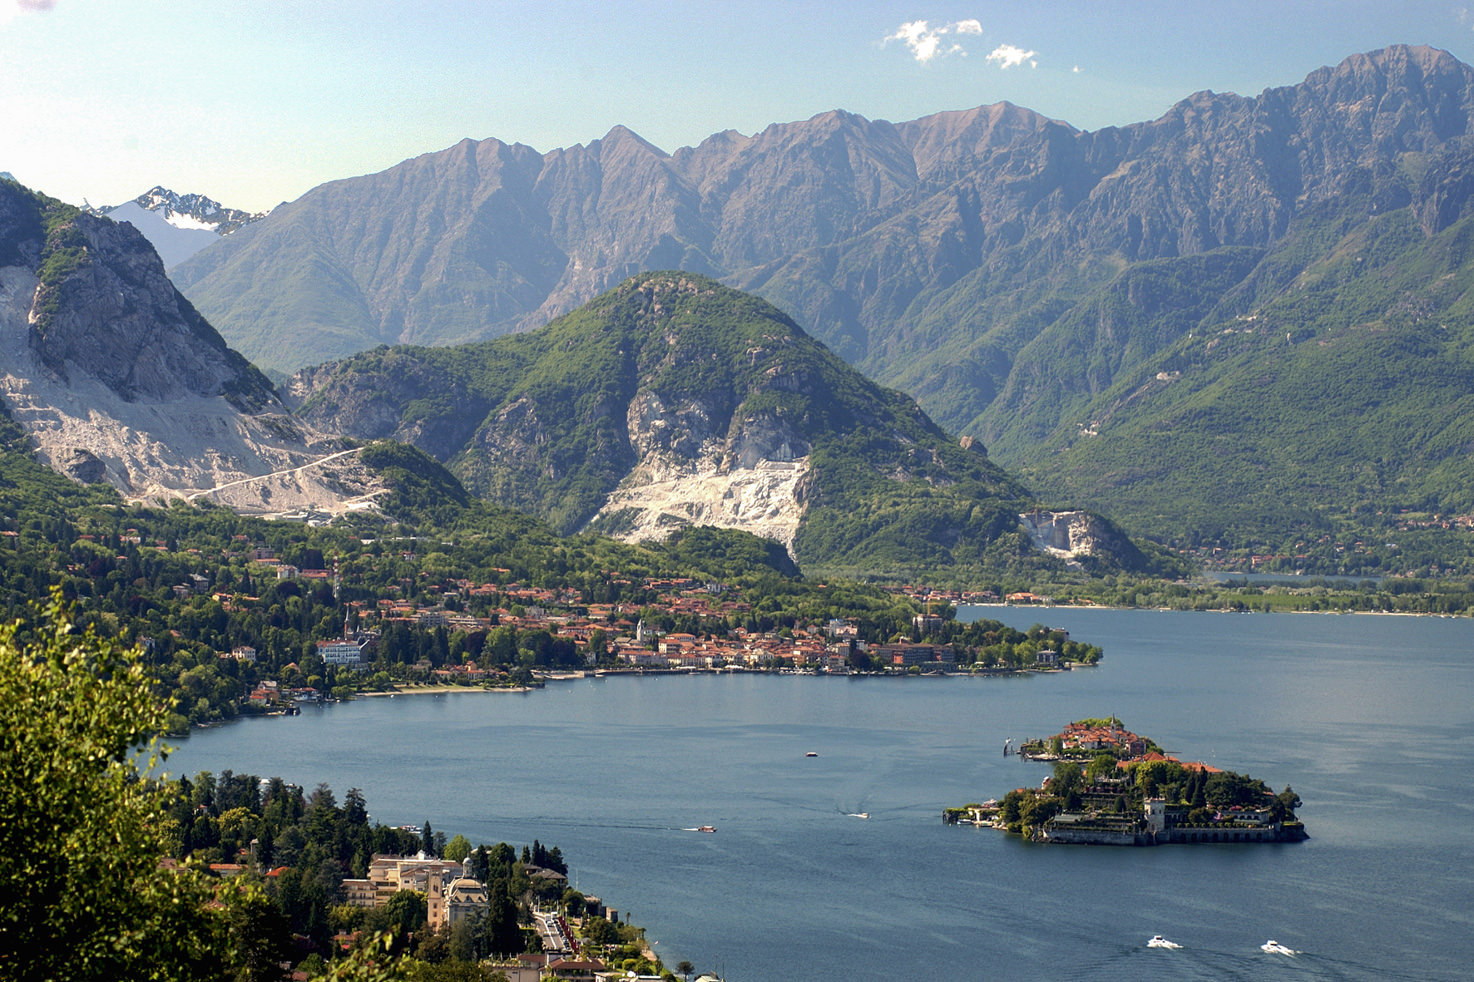 Baveno location for civil weddings on Lake Maggiore